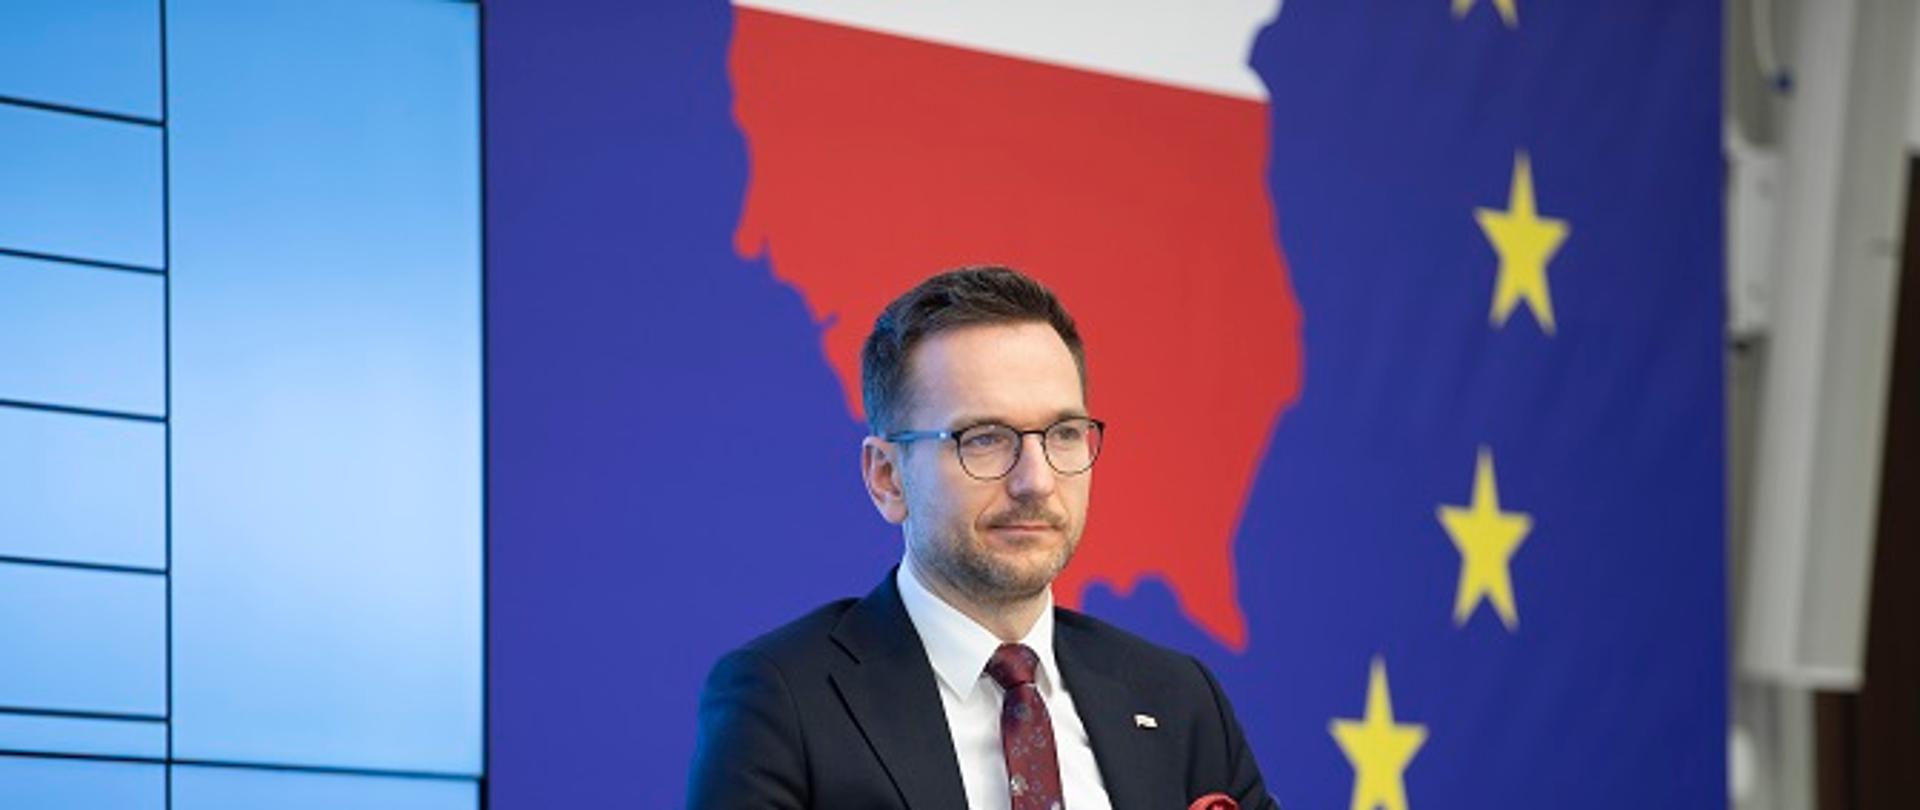 Minister Waldemar Buda siedzi na fotelu z dokumentami w ręku. Za nim duży ekran, na którym biało-czerwoną mapę Polski na granatowym tle z gwiazdkami, nawiązujące do flagi UE